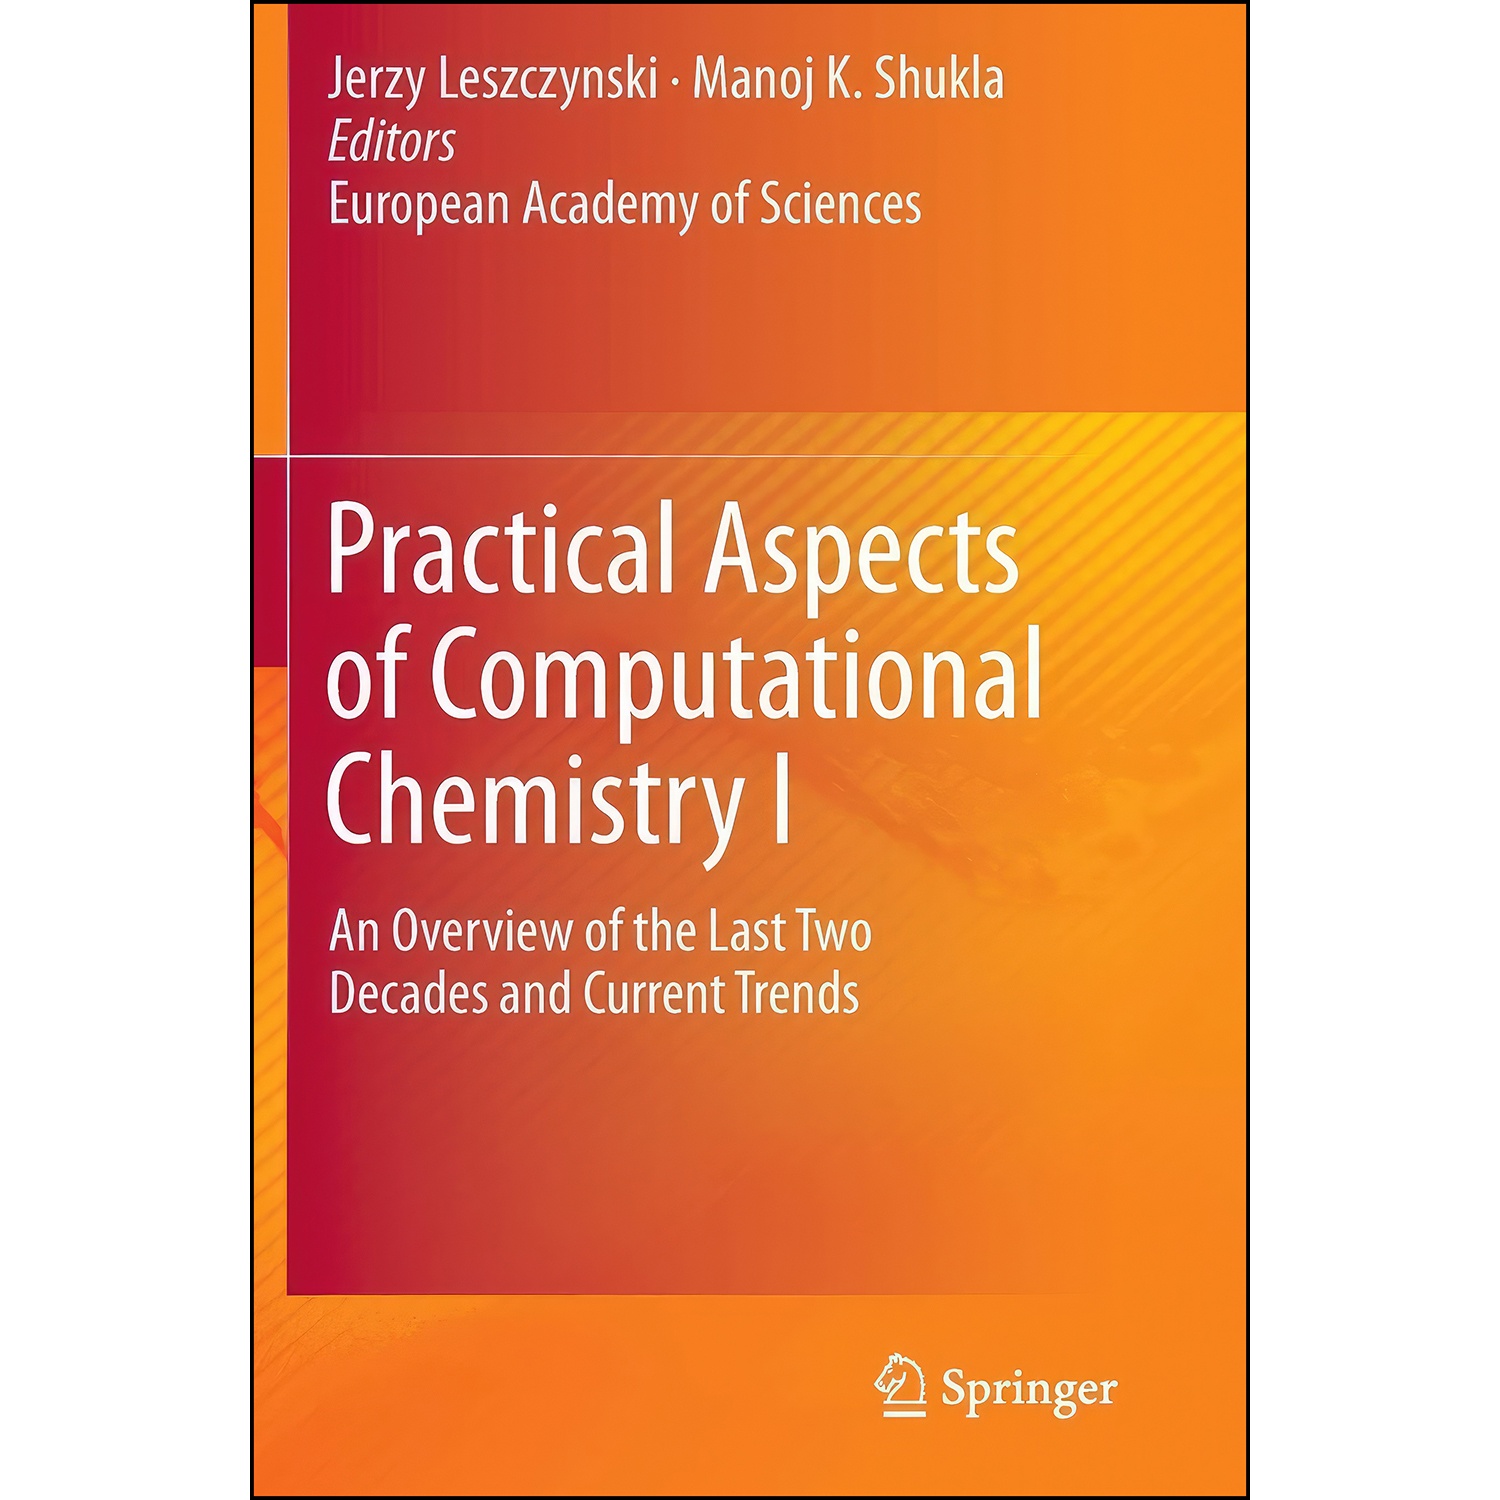 کتاب Practical Aspects of Computational Chemistry I اثر Jerzy Leszczynski and Manoj Shukla انتشارات Springer